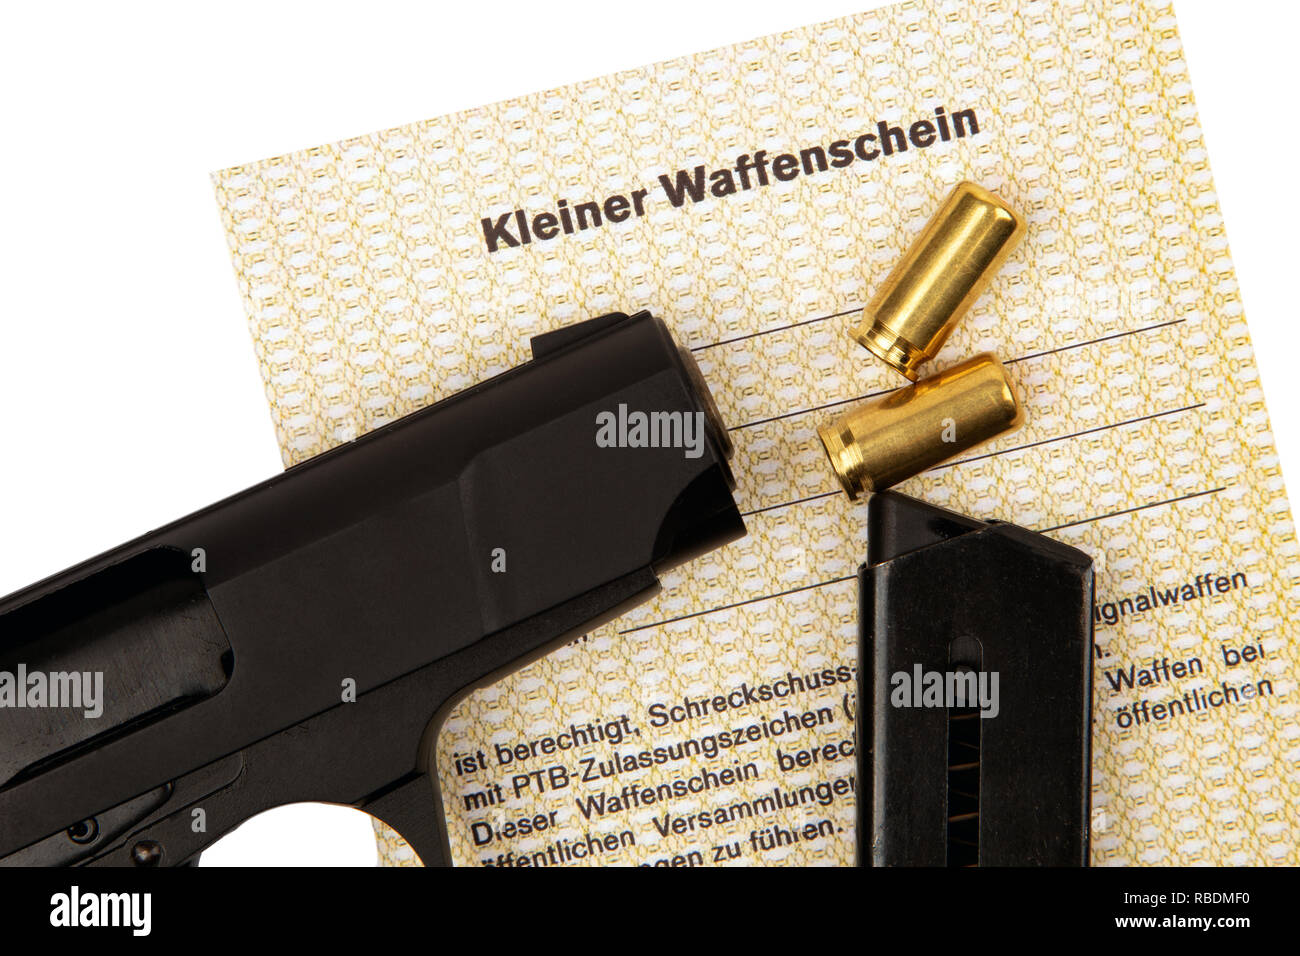 https://c8.alamy.com/compde/rbdmf0/deutsche-text-kleine-waffe-in-deutschland-ermoglicht-die-schrotflinte-und-gas-pistolen-rbdmf0.jpg